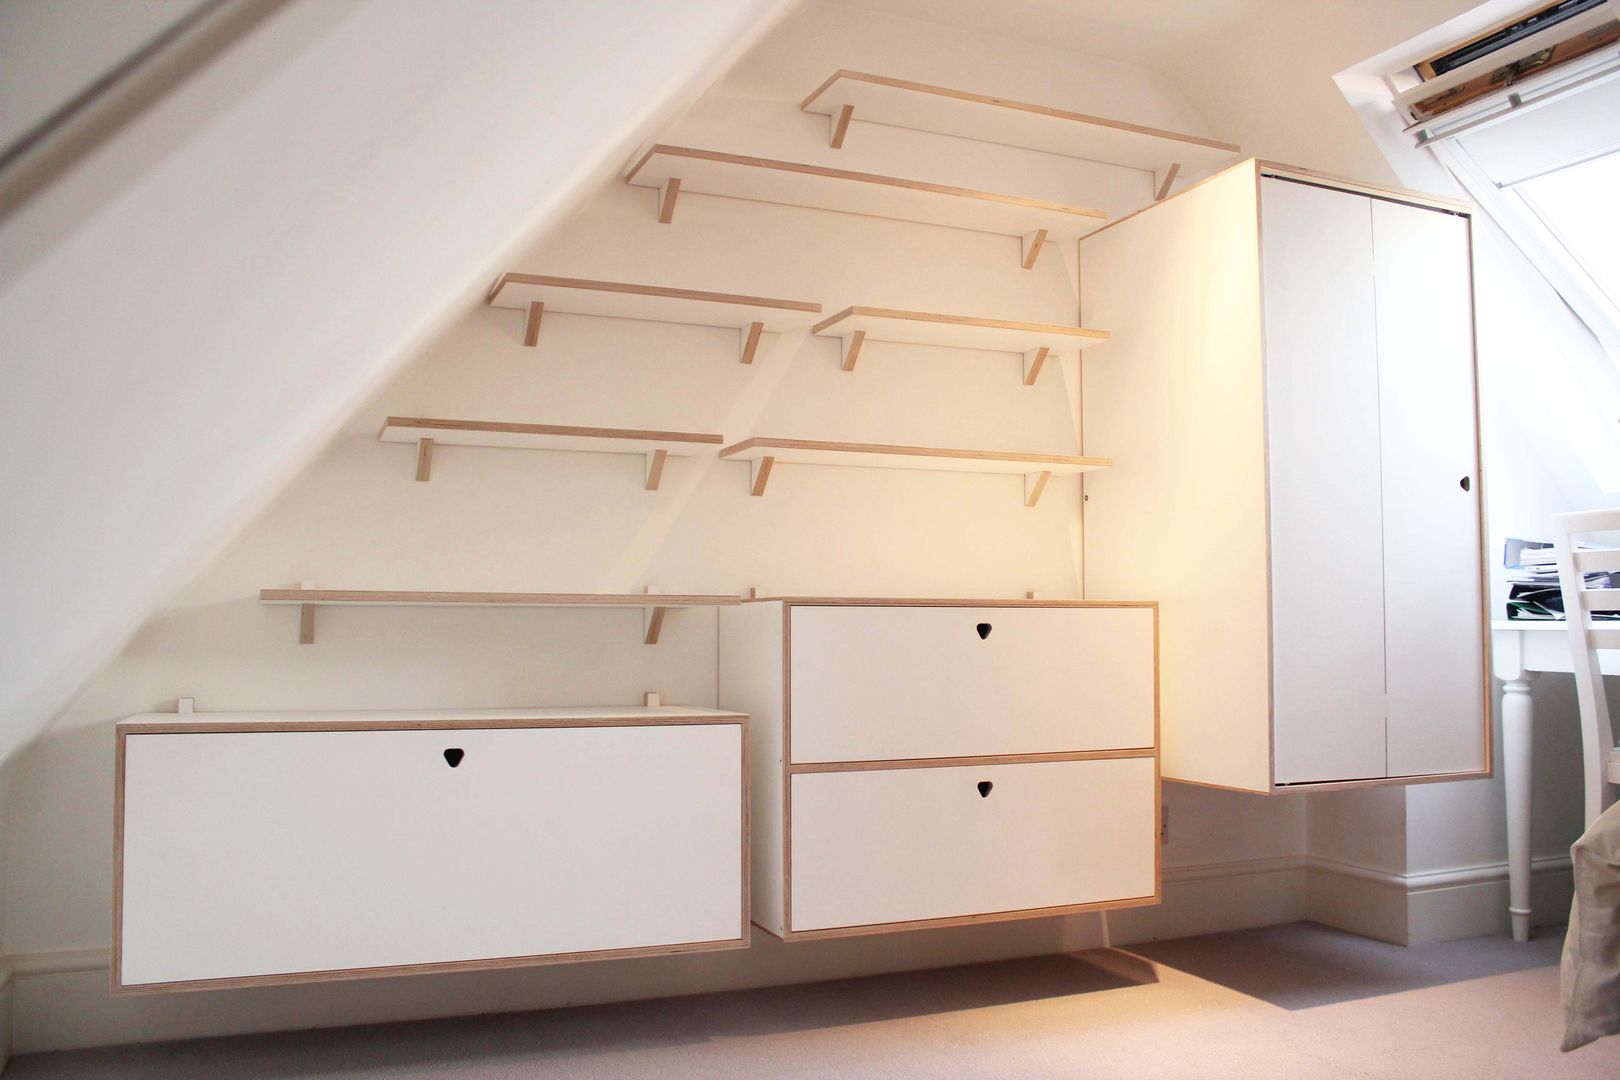 Full Shelving system with cabinets and wardrobe Happenstance Workshop Dormitorios de estilo moderno Contrachapado Clósets y cómodas